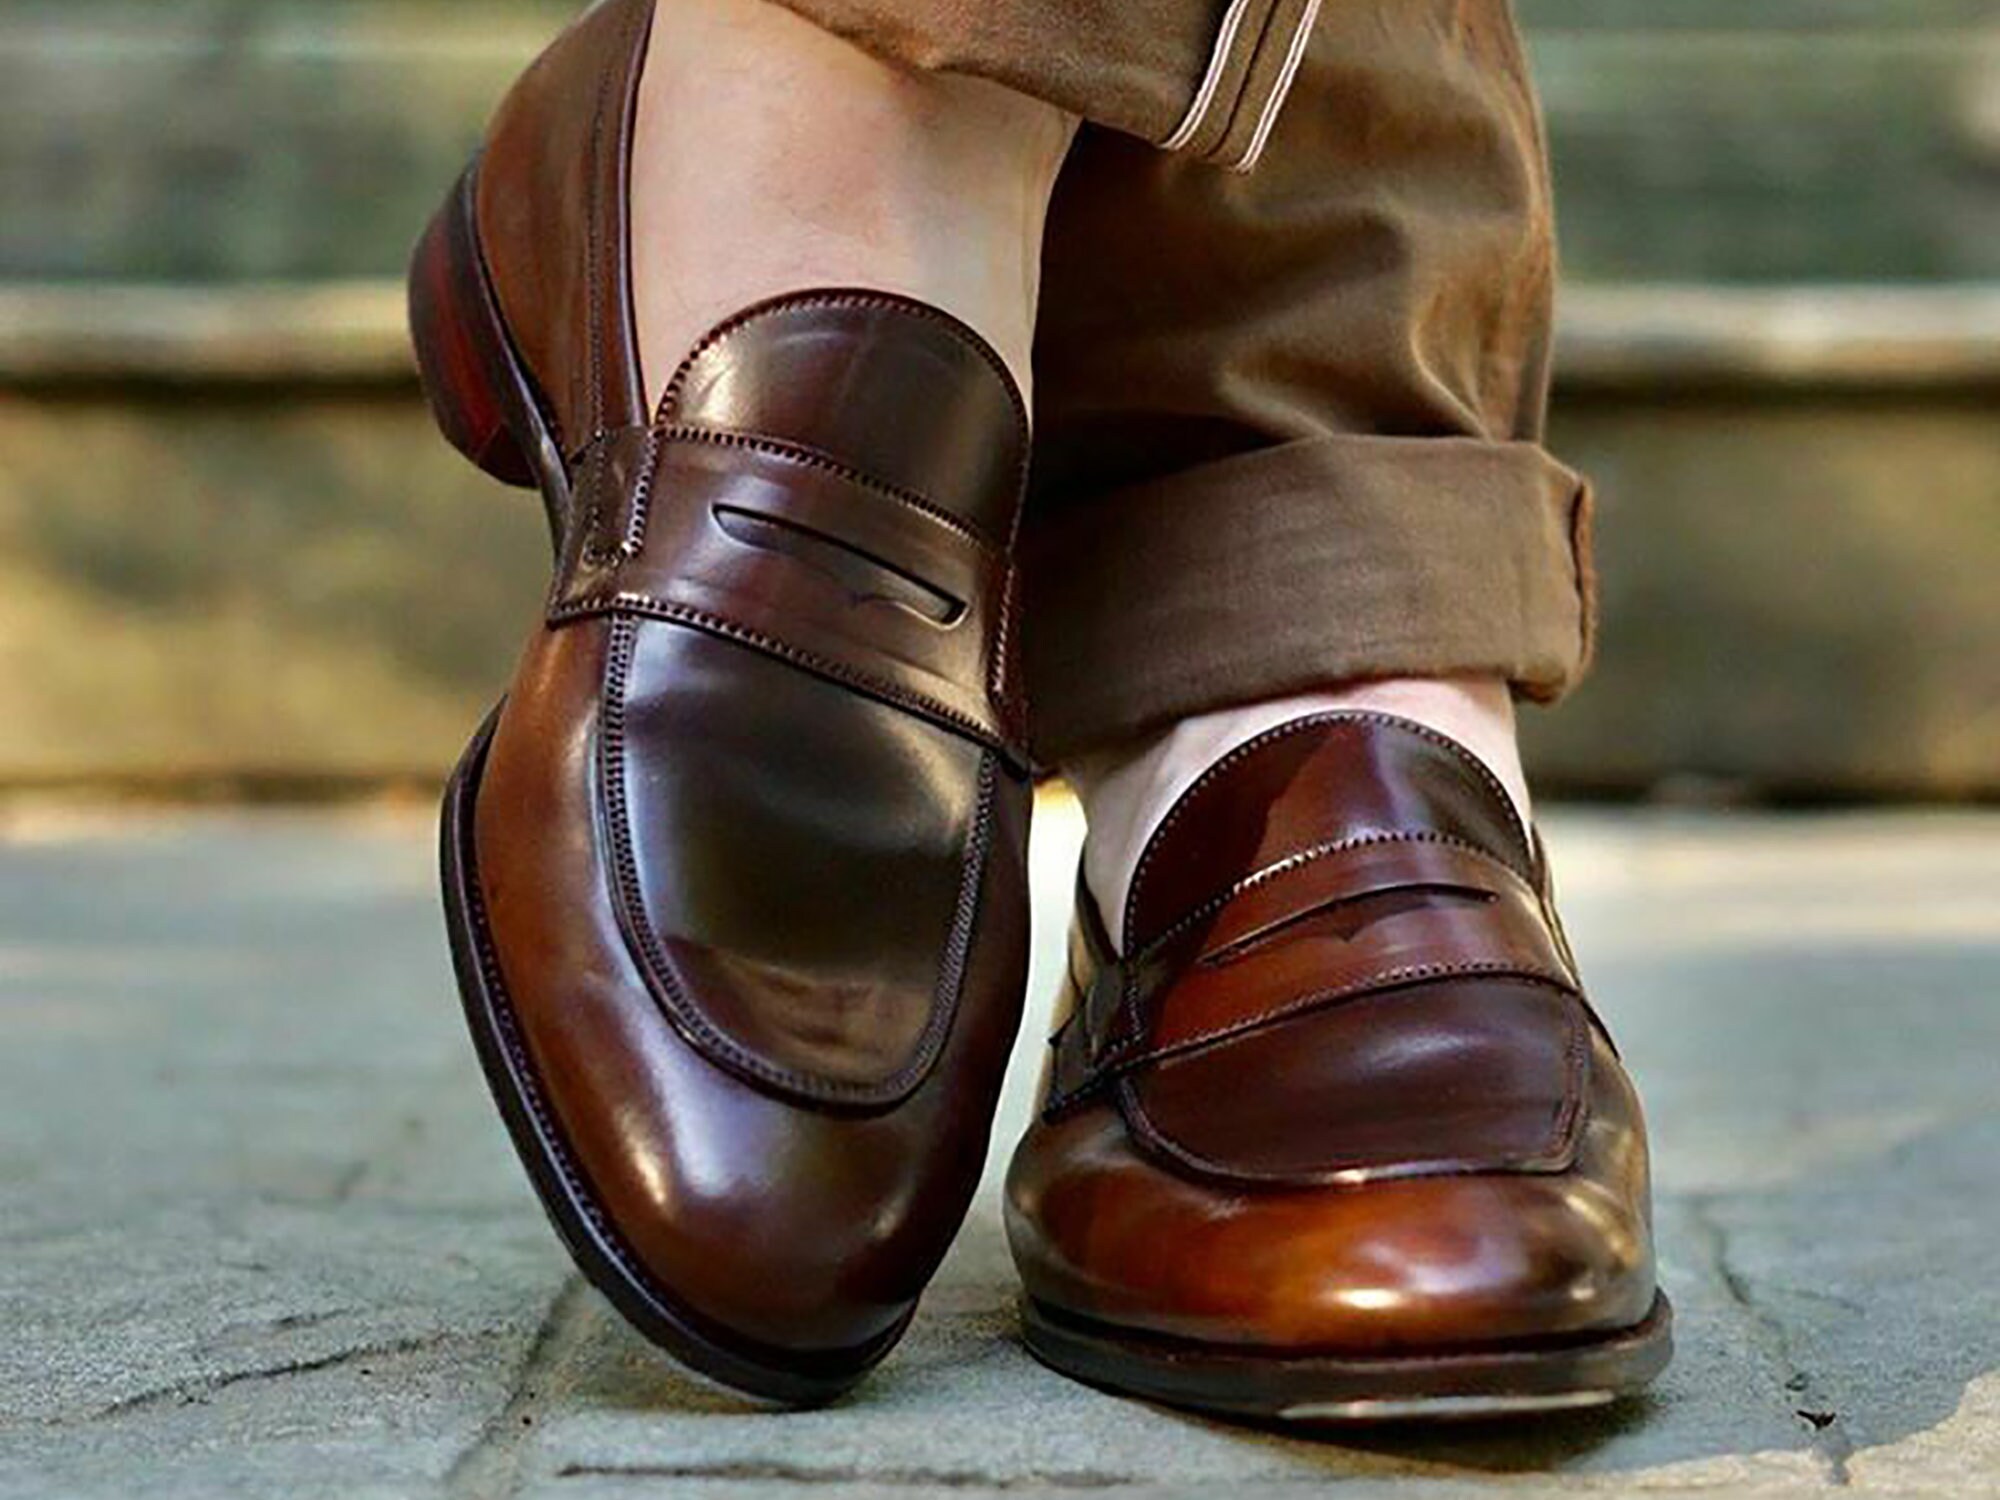 op bestelling gemaakt Nieuwe Pure Handmade zwarte echt lederen schoenen op maat gemaakt Schoenen Schoenen Herenschoenen Verkleden Leer handgemaakt schoenen voor mannen 